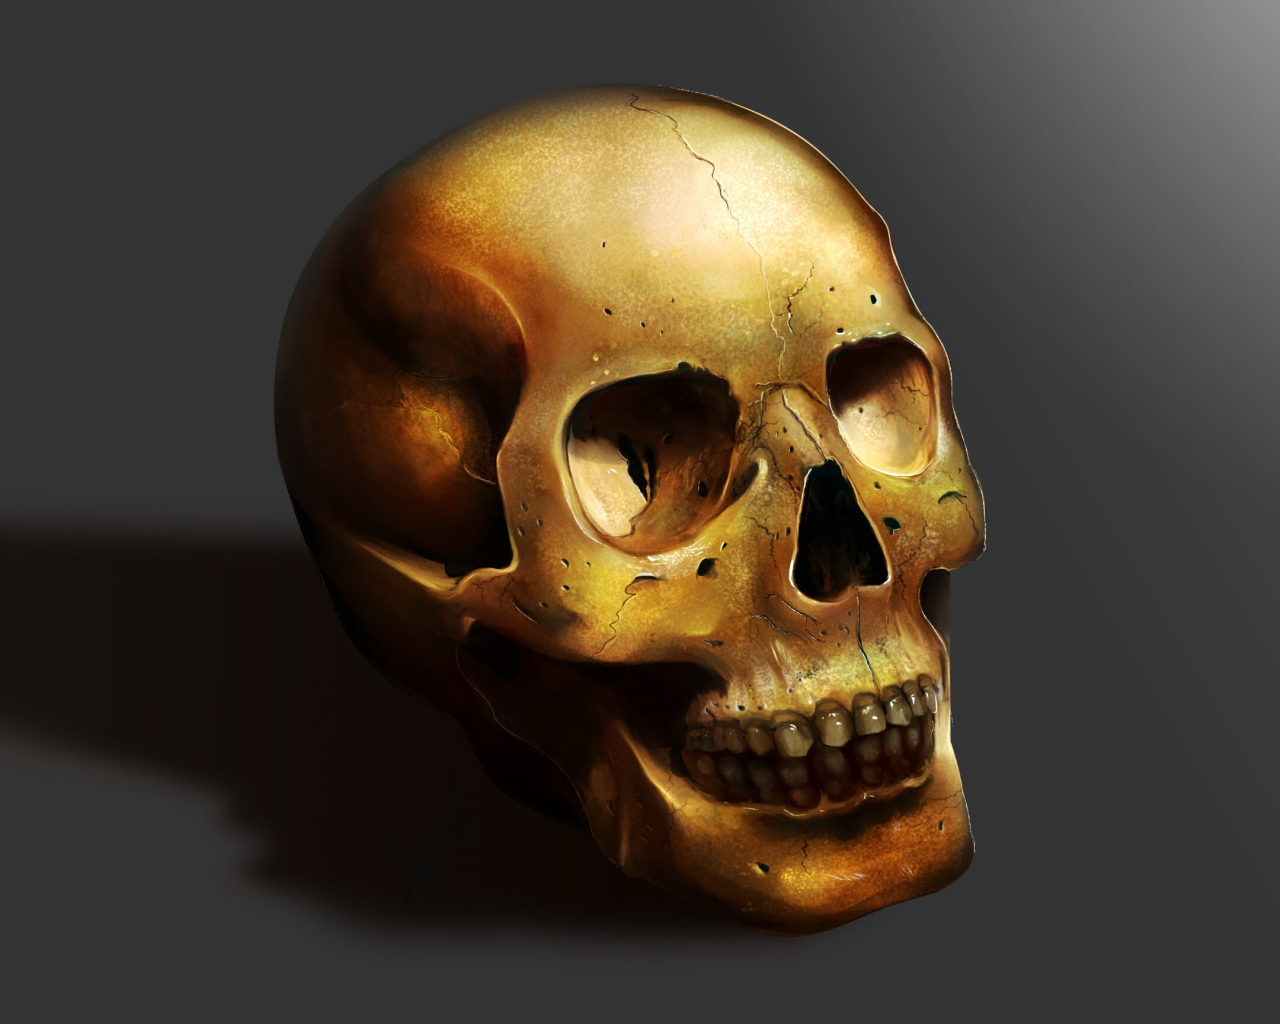 Golden skull on a gray background